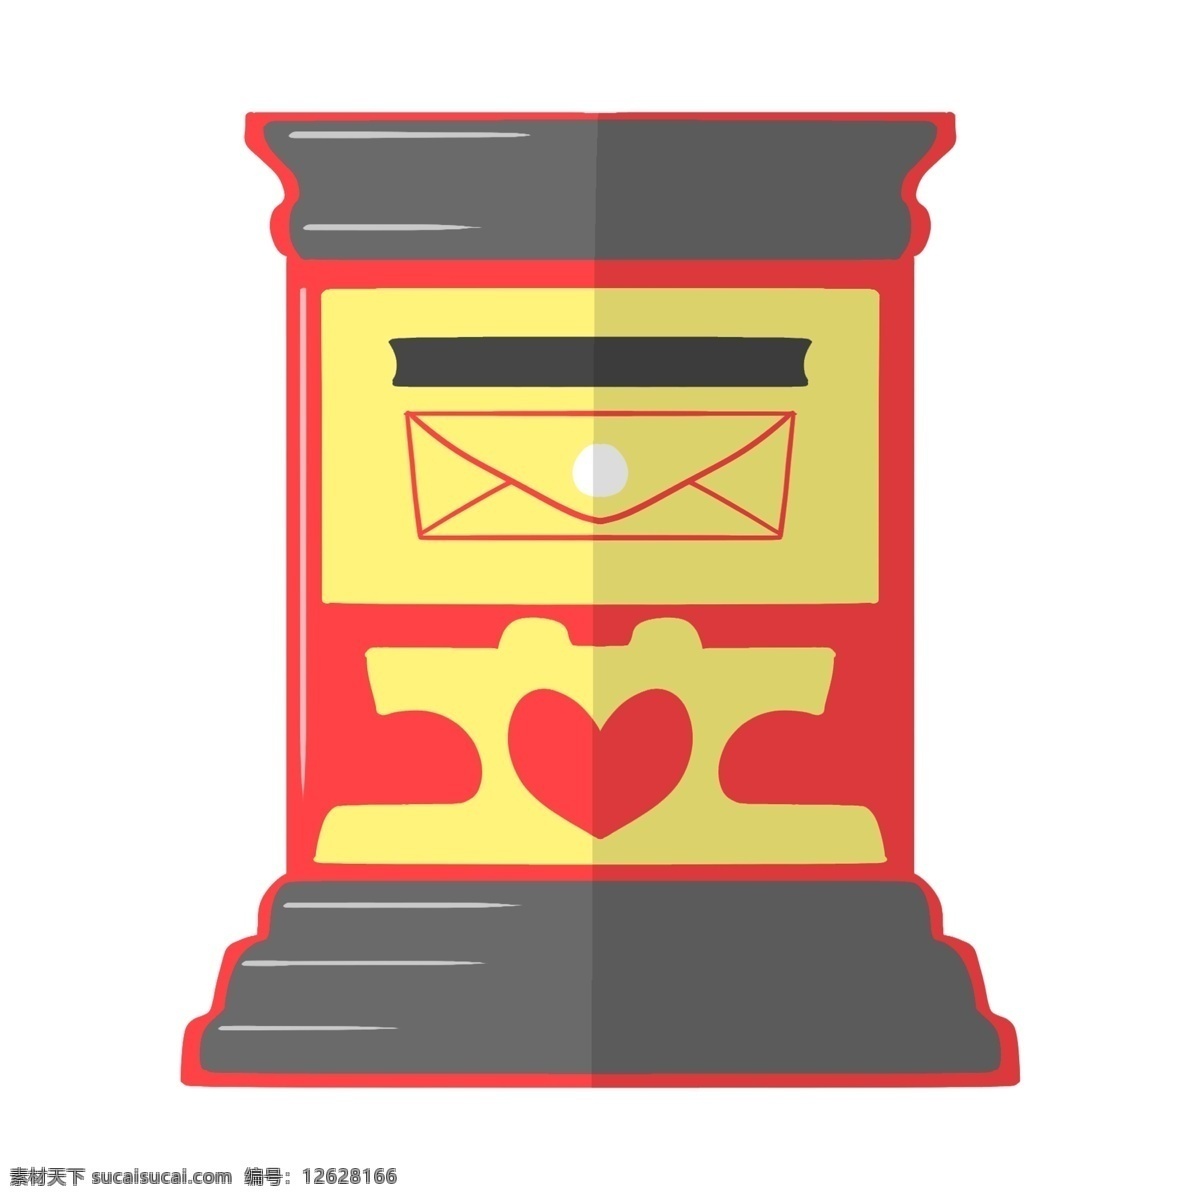 红色 漂亮 邮筒 插画 红色的邮筒 爱心邮筒 黄色 信封 漂亮的邮筒 手绘邮筒 卡通邮筒 邮筒装饰